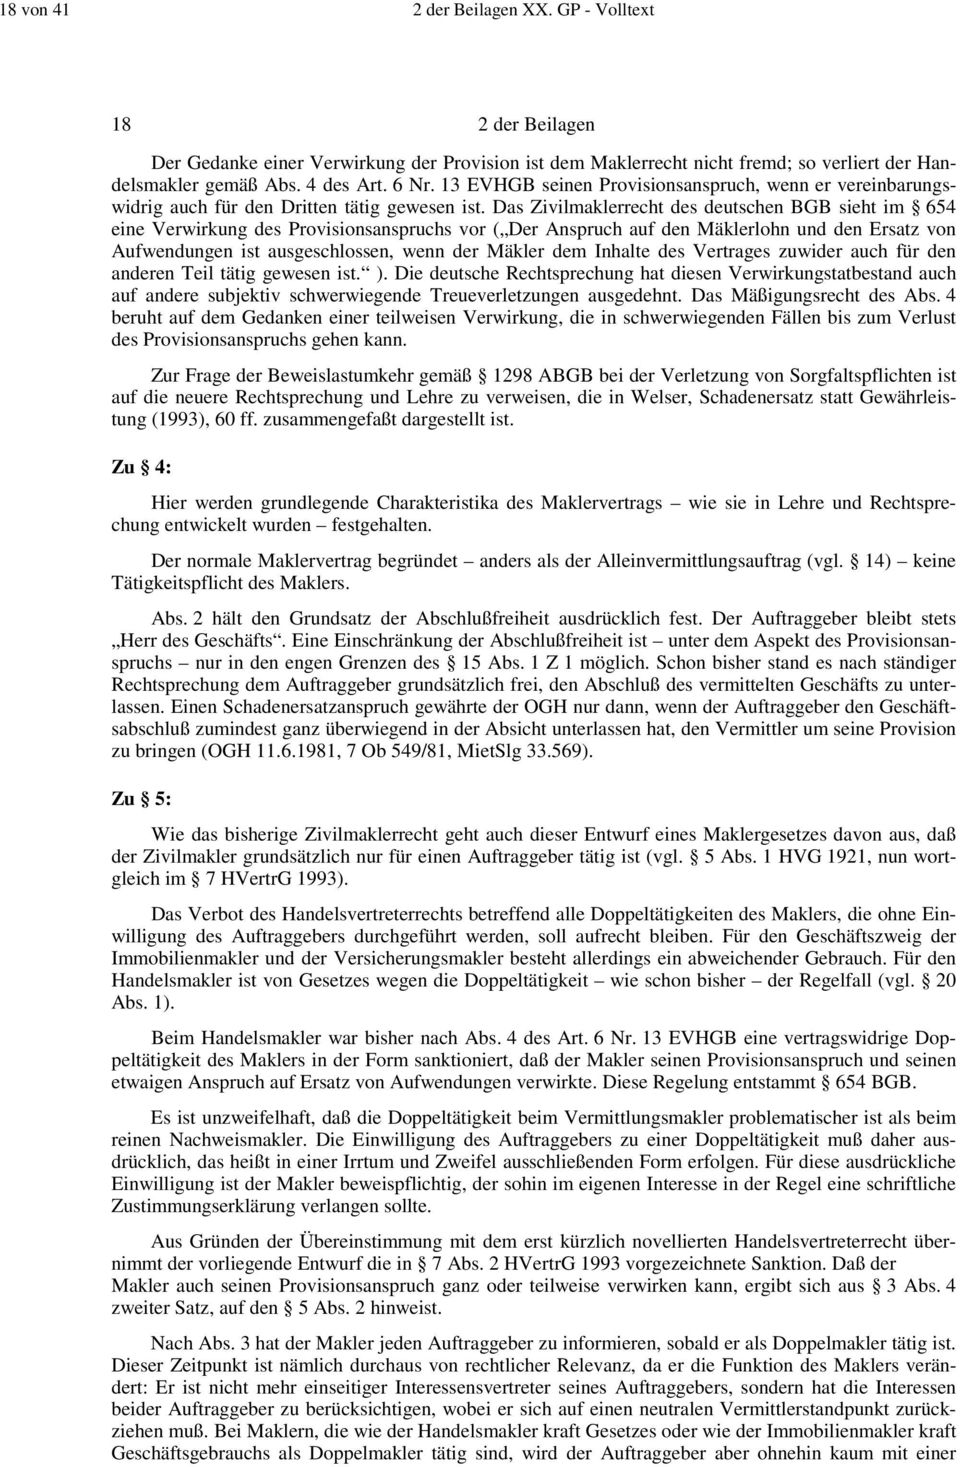 Das Zivilmaklerrecht des deutschen BGB sieht im 654 eine Verwirkung des Provisionsanspruchs vor ( Der Anspruch auf den Mäklerlohn und den Ersatz von Aufwendungen ist ausgeschlossen, wenn der Mäkler